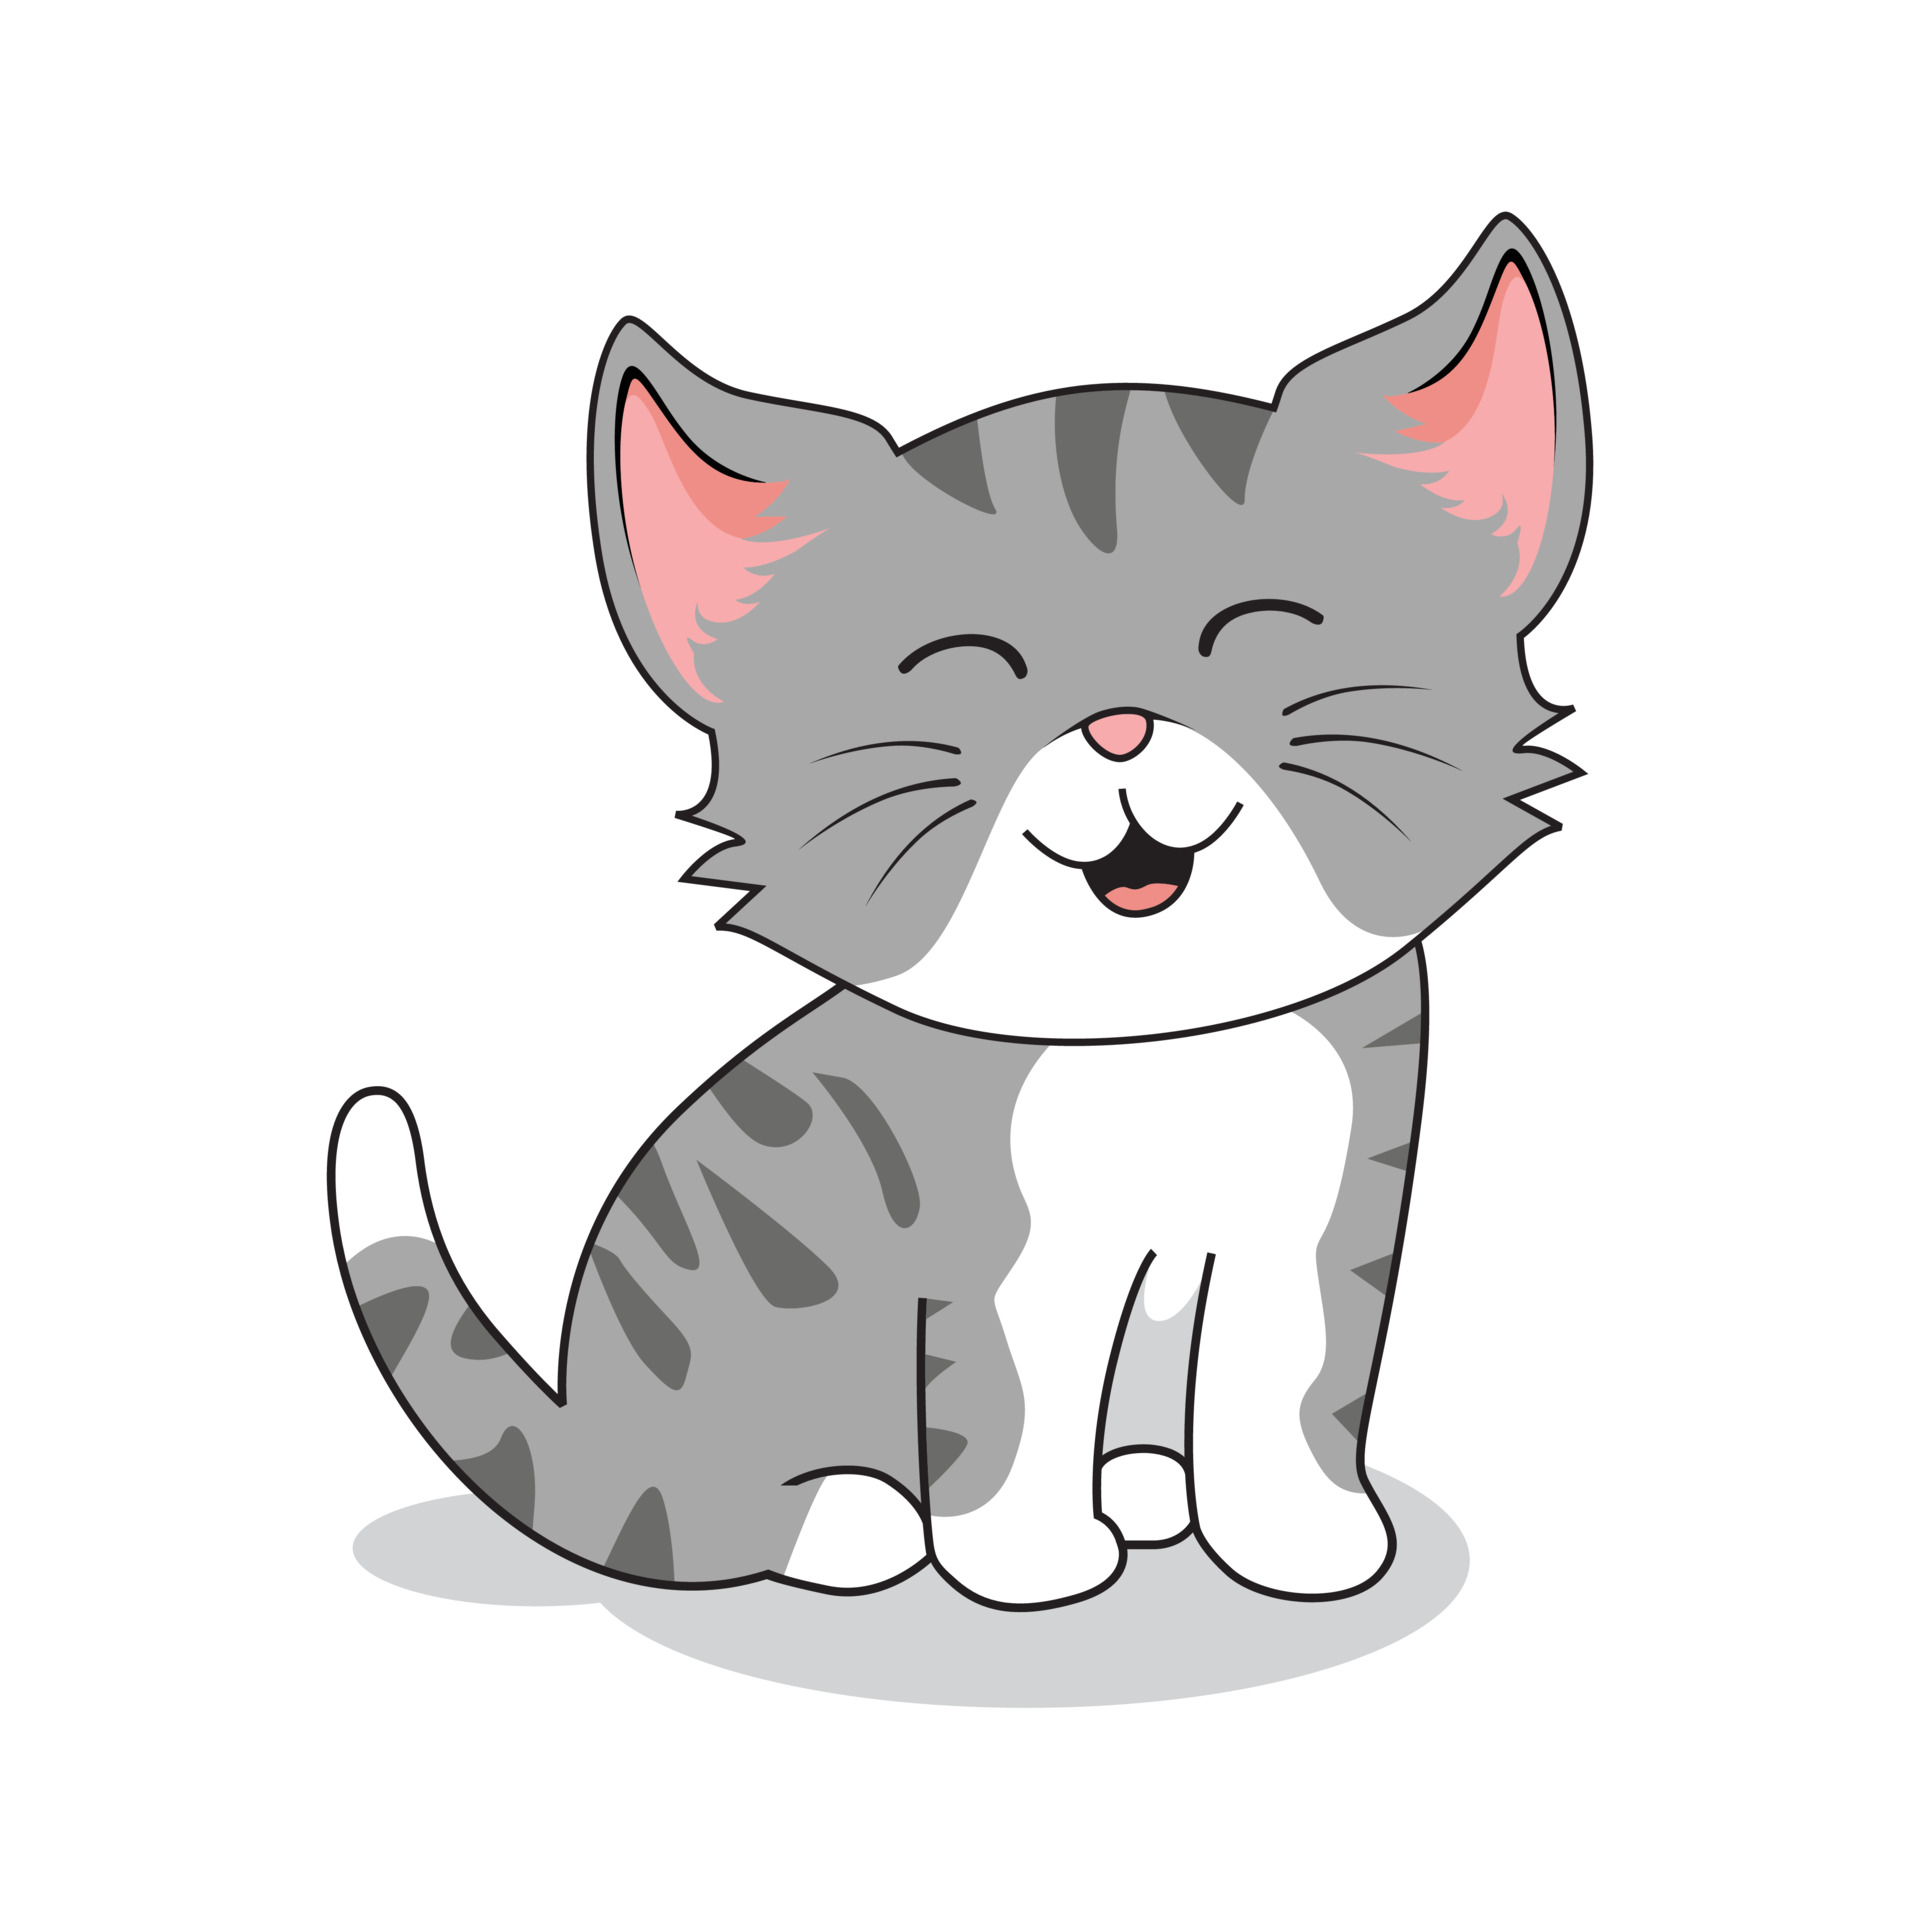 Desenho mínimo do gato imagem vetorial de Sudowoodo© 179286326